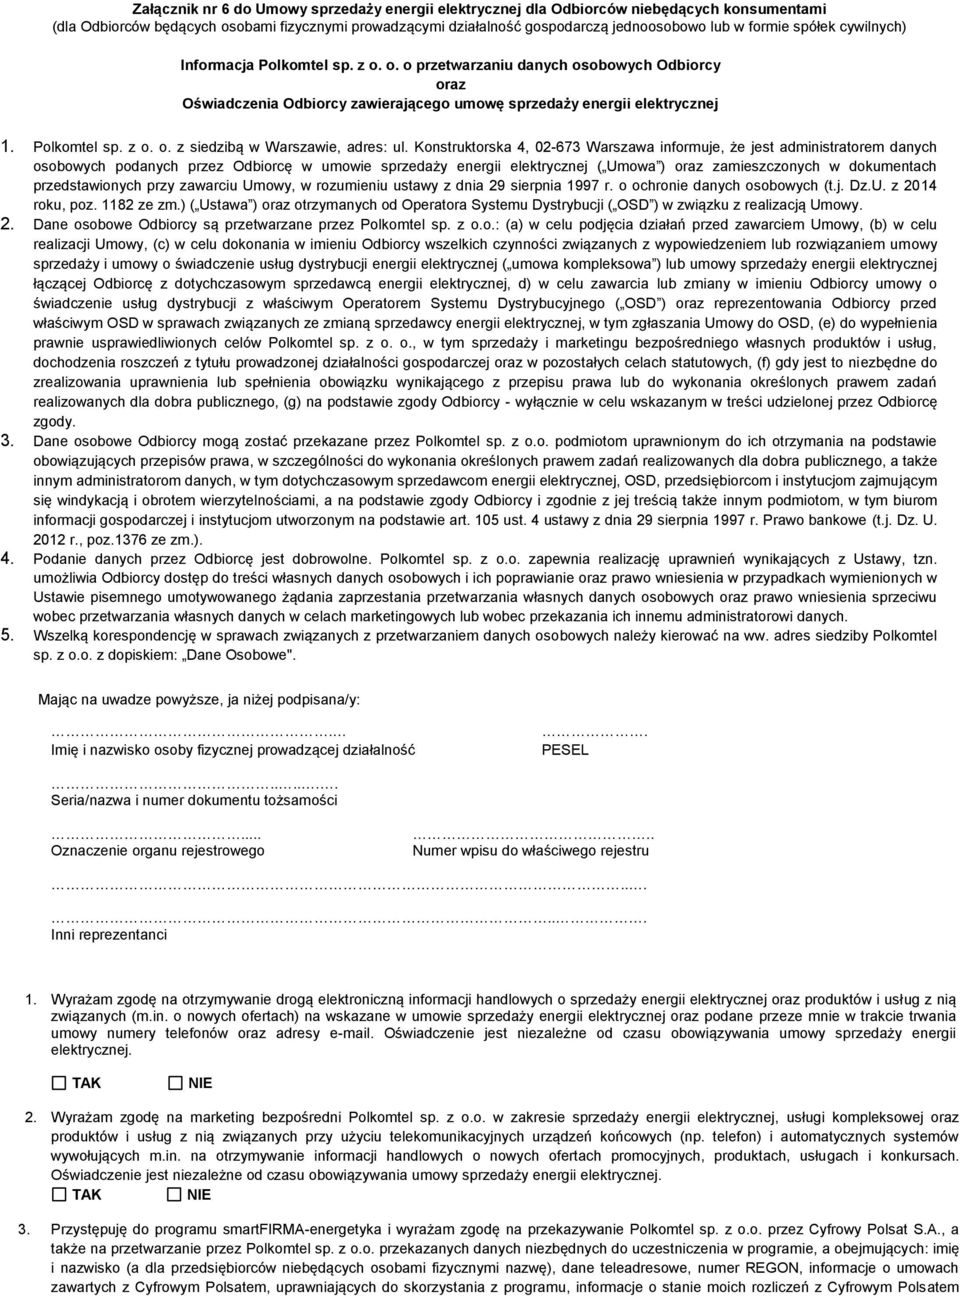 Konstruktorska 4, 02-673 Warszawa informuje, że jest administratorem danych osobowych podanych przez Odbiorcę w umowie sprzedaży energii elektrycznej ( Umowa ) oraz zamieszczonych w dokumentach